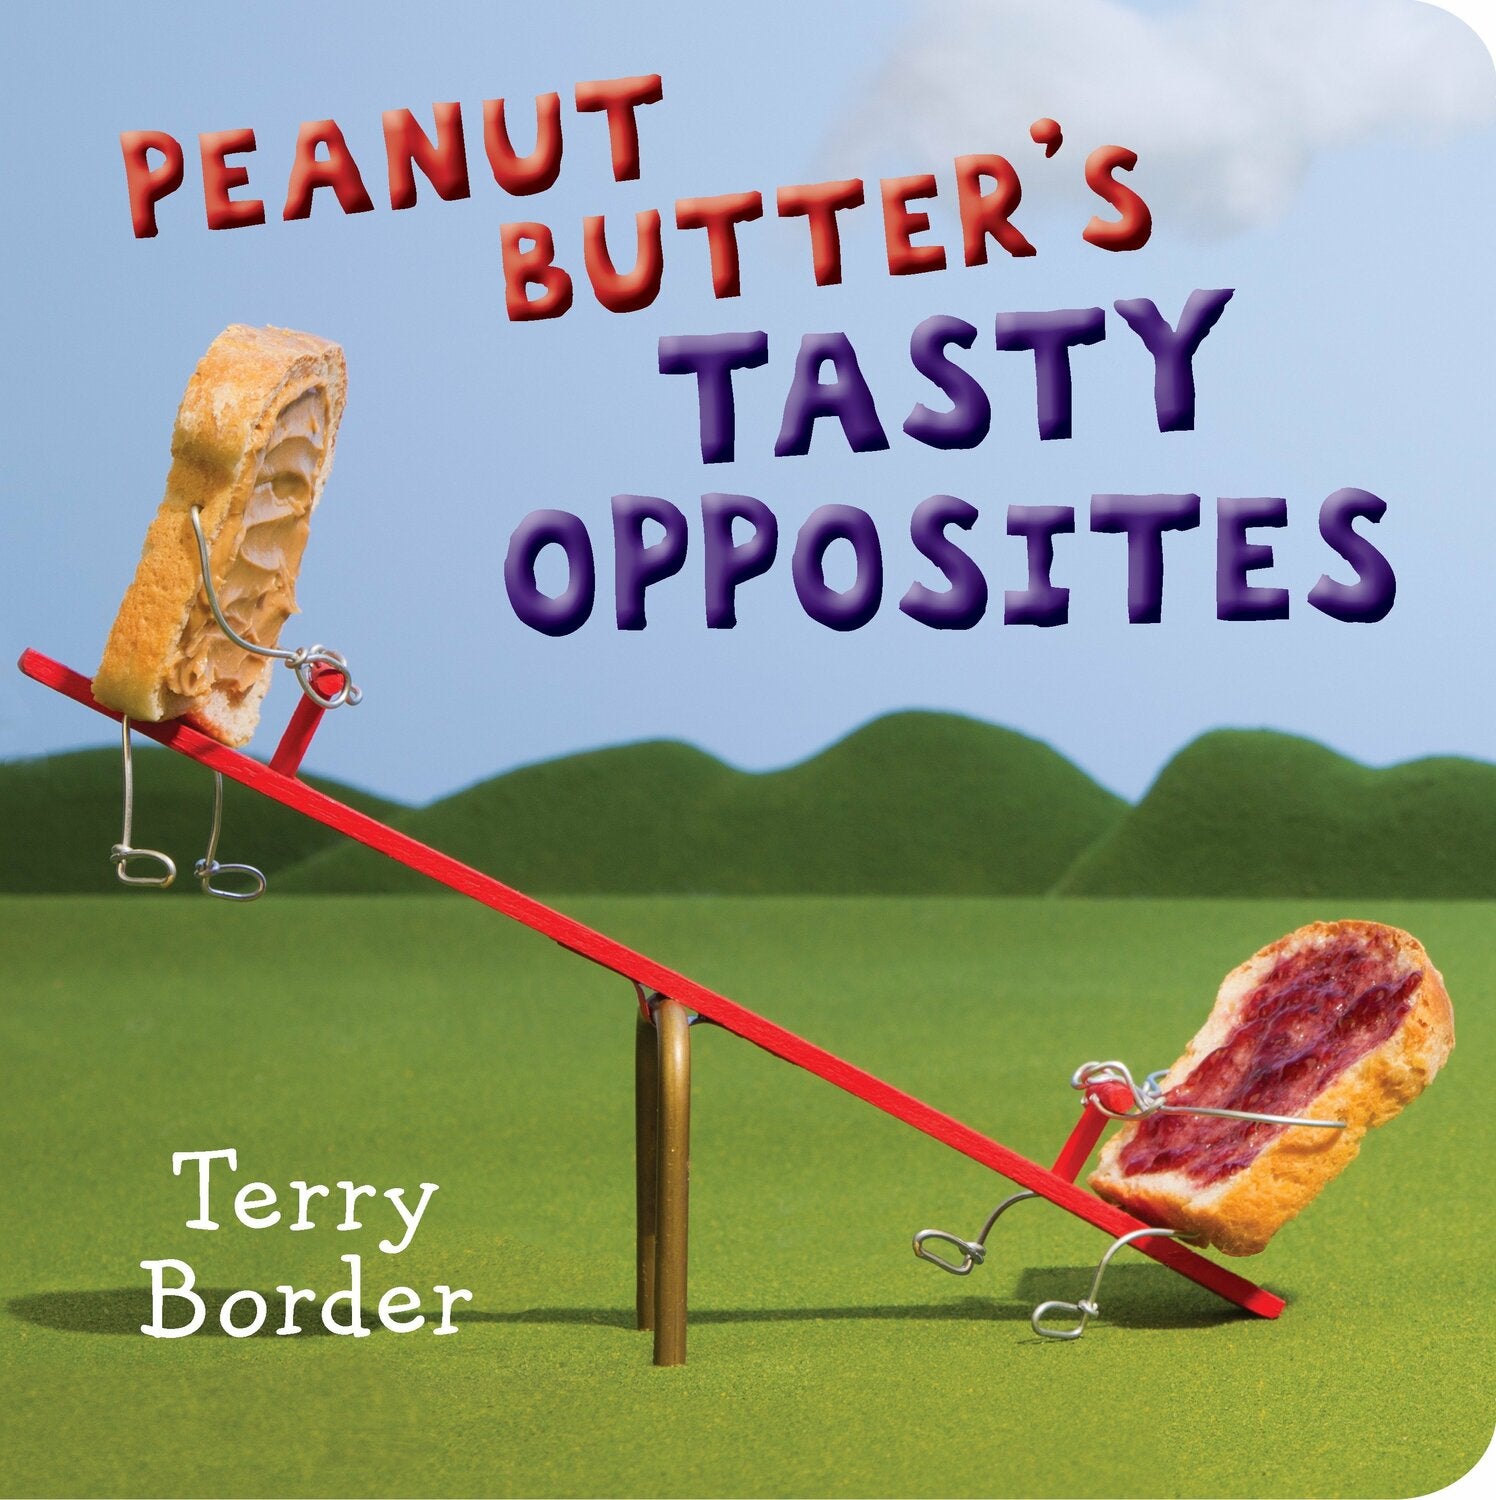 Peanut Butter's Tasty Opposites